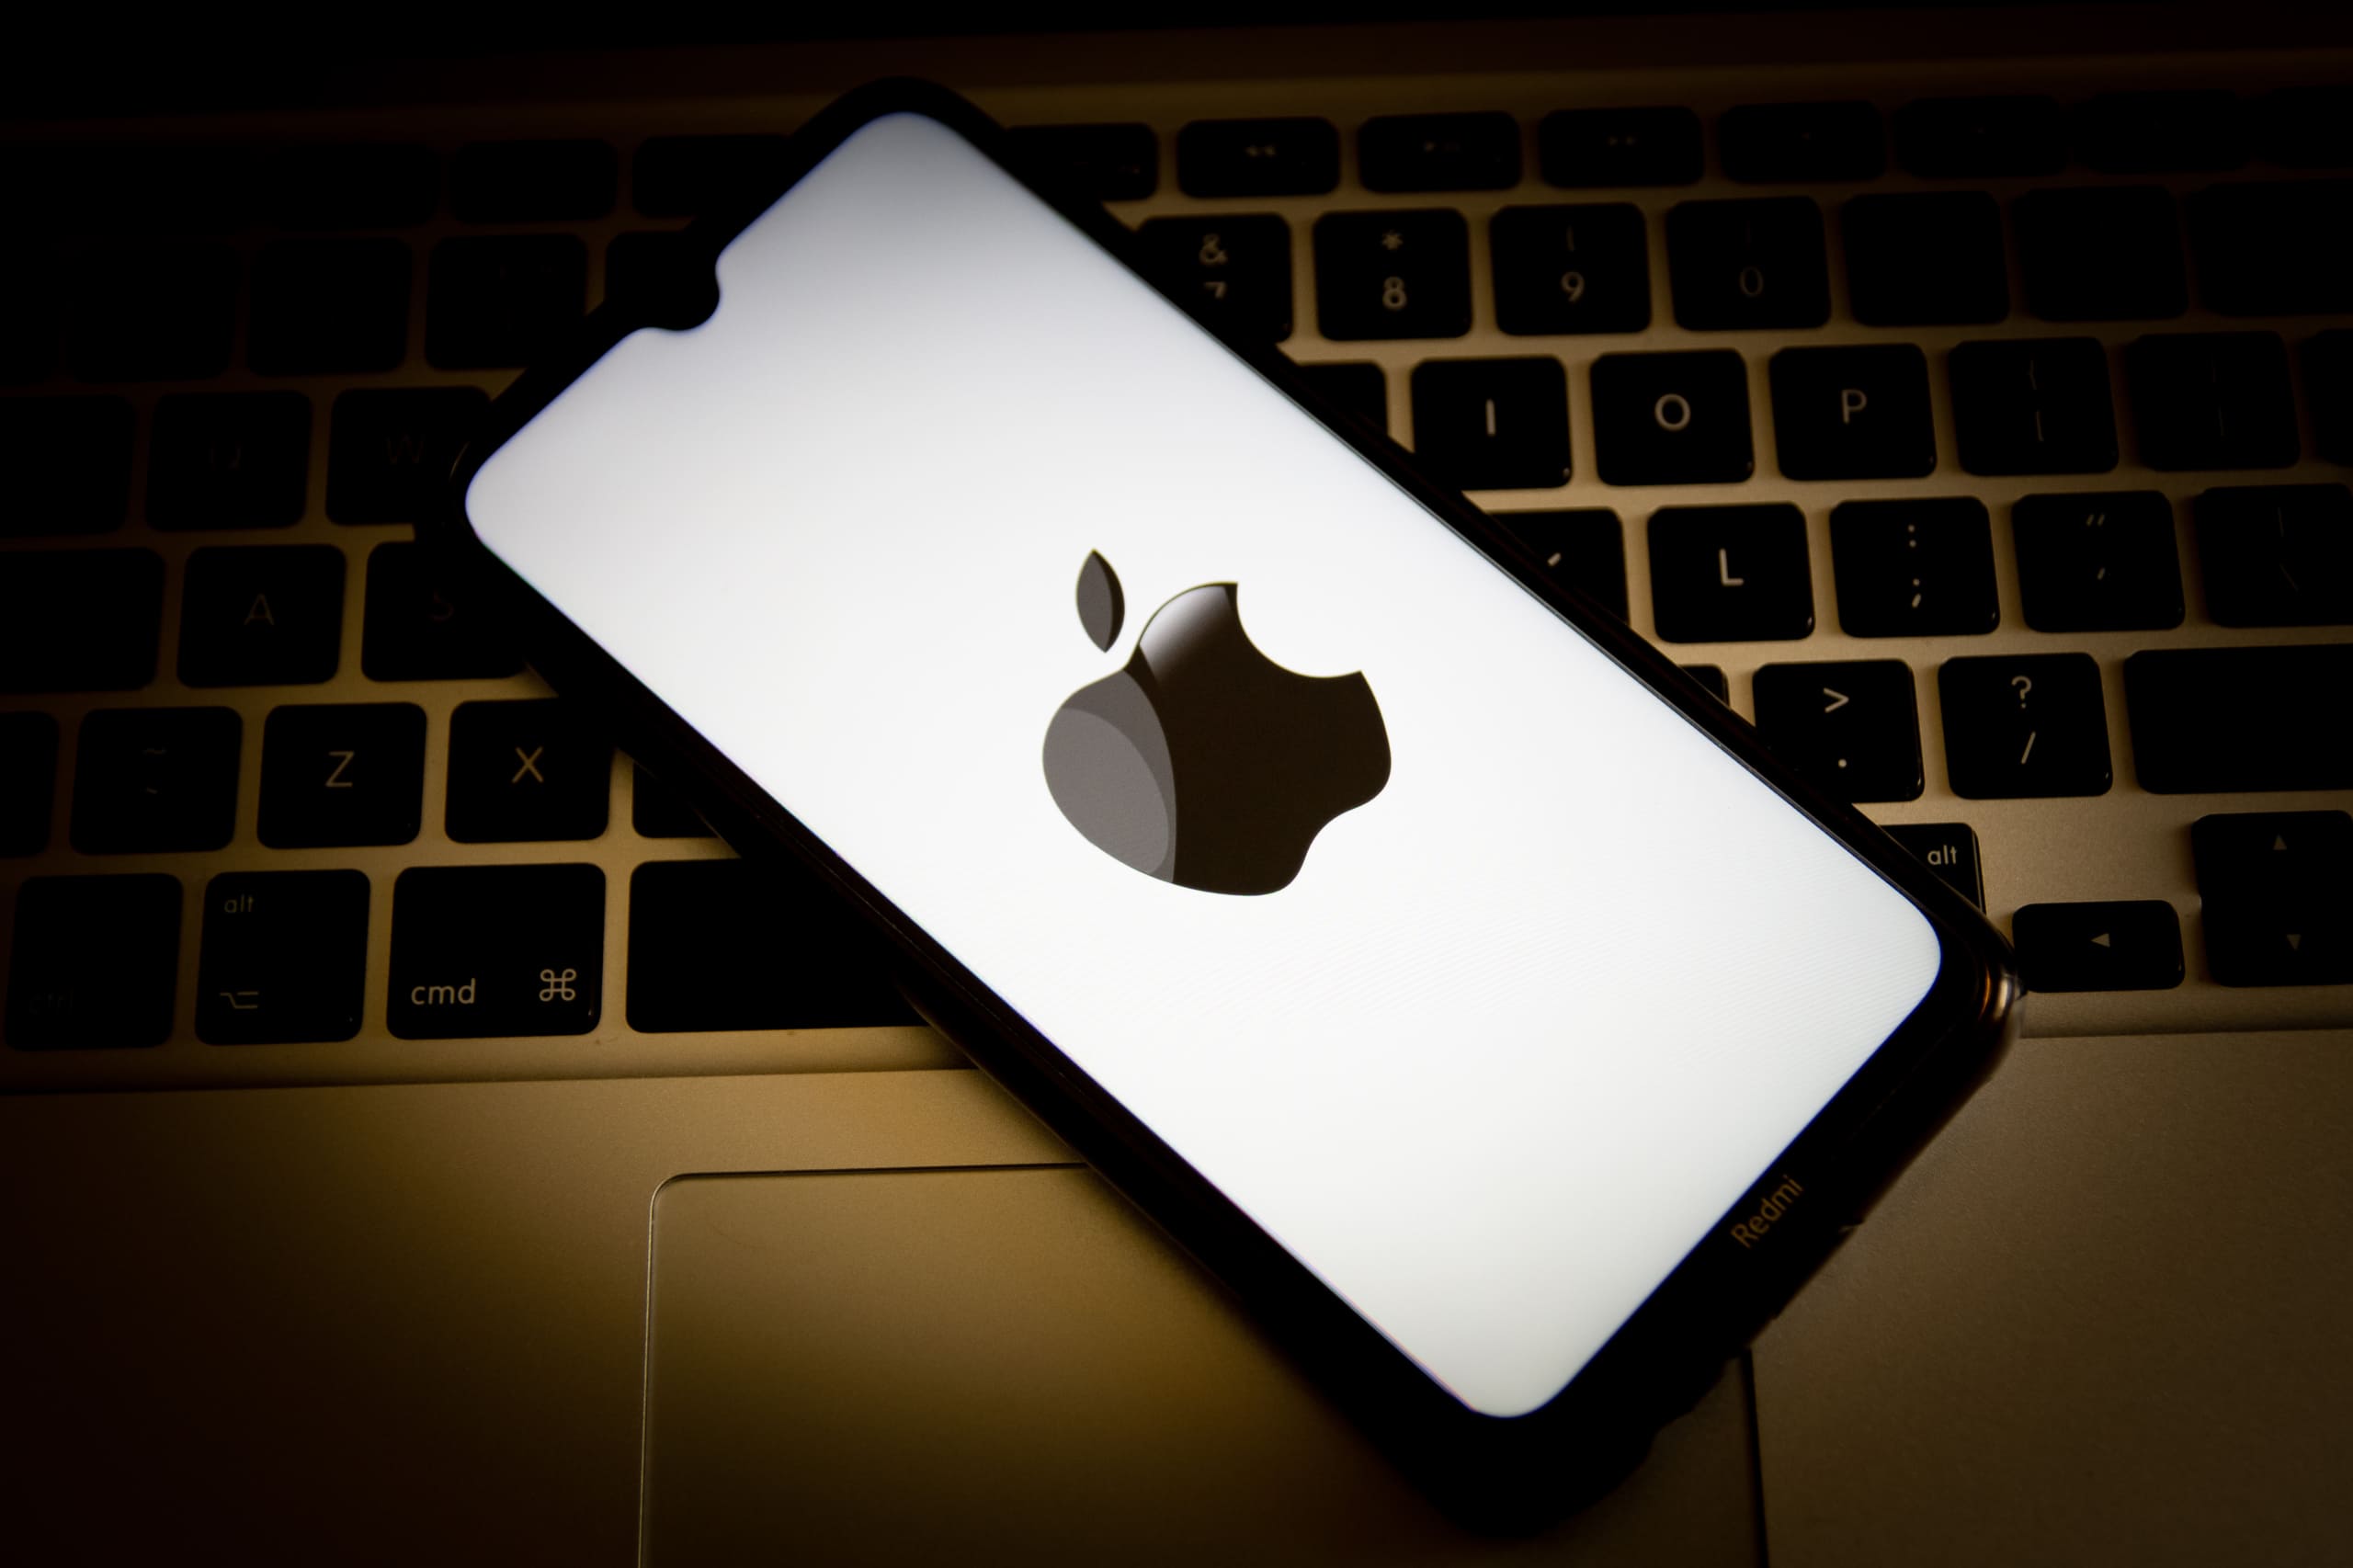 สปายแวร์ราคาแพงโจมตี iPhone Apple เตือนผู้ใช้ทั่วโลก